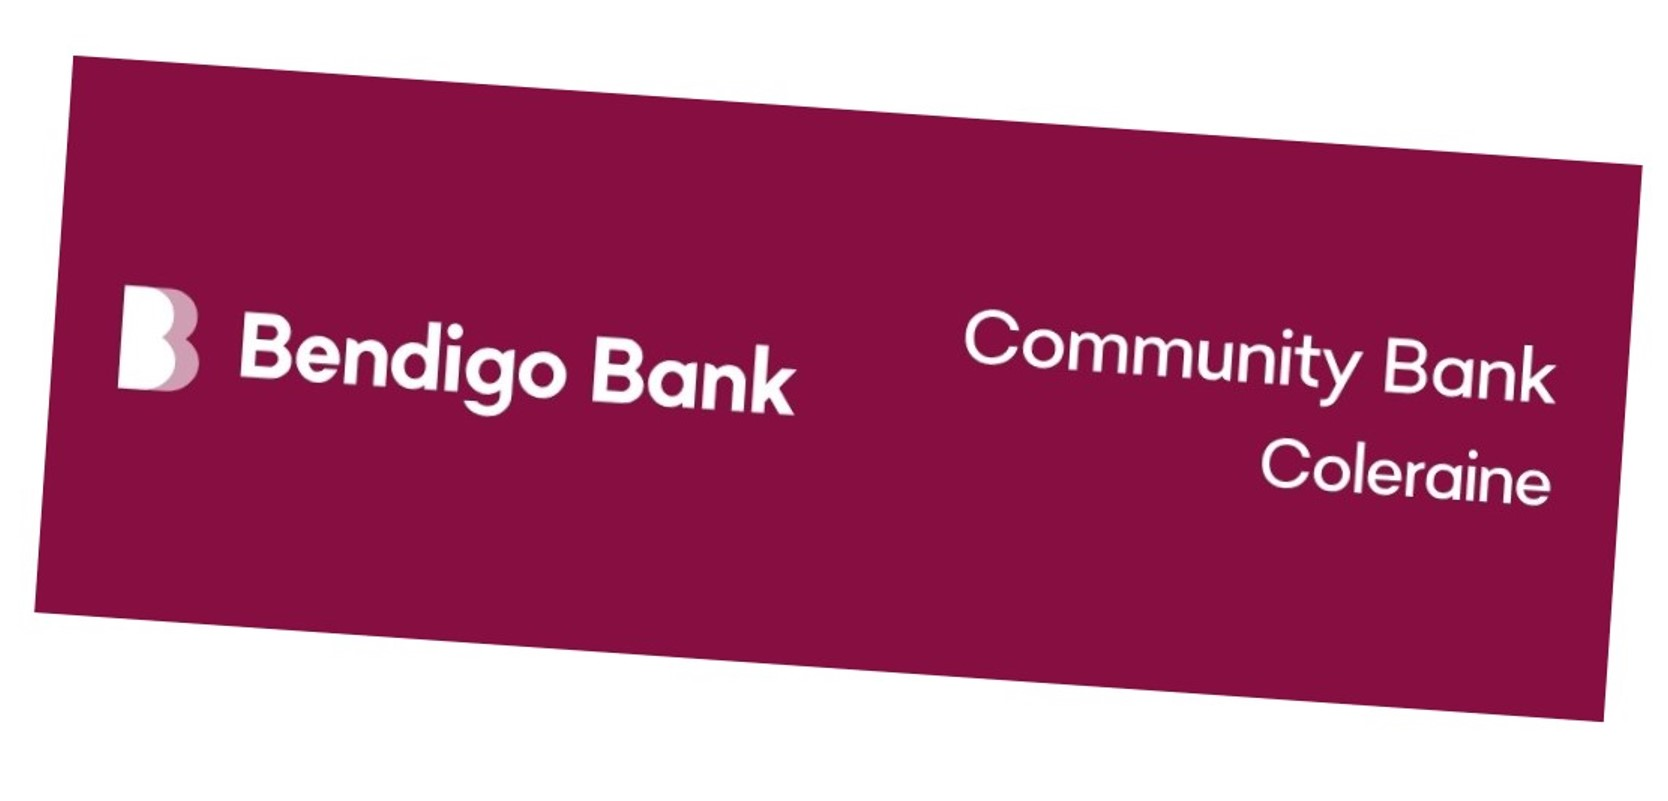 bendigo-bank